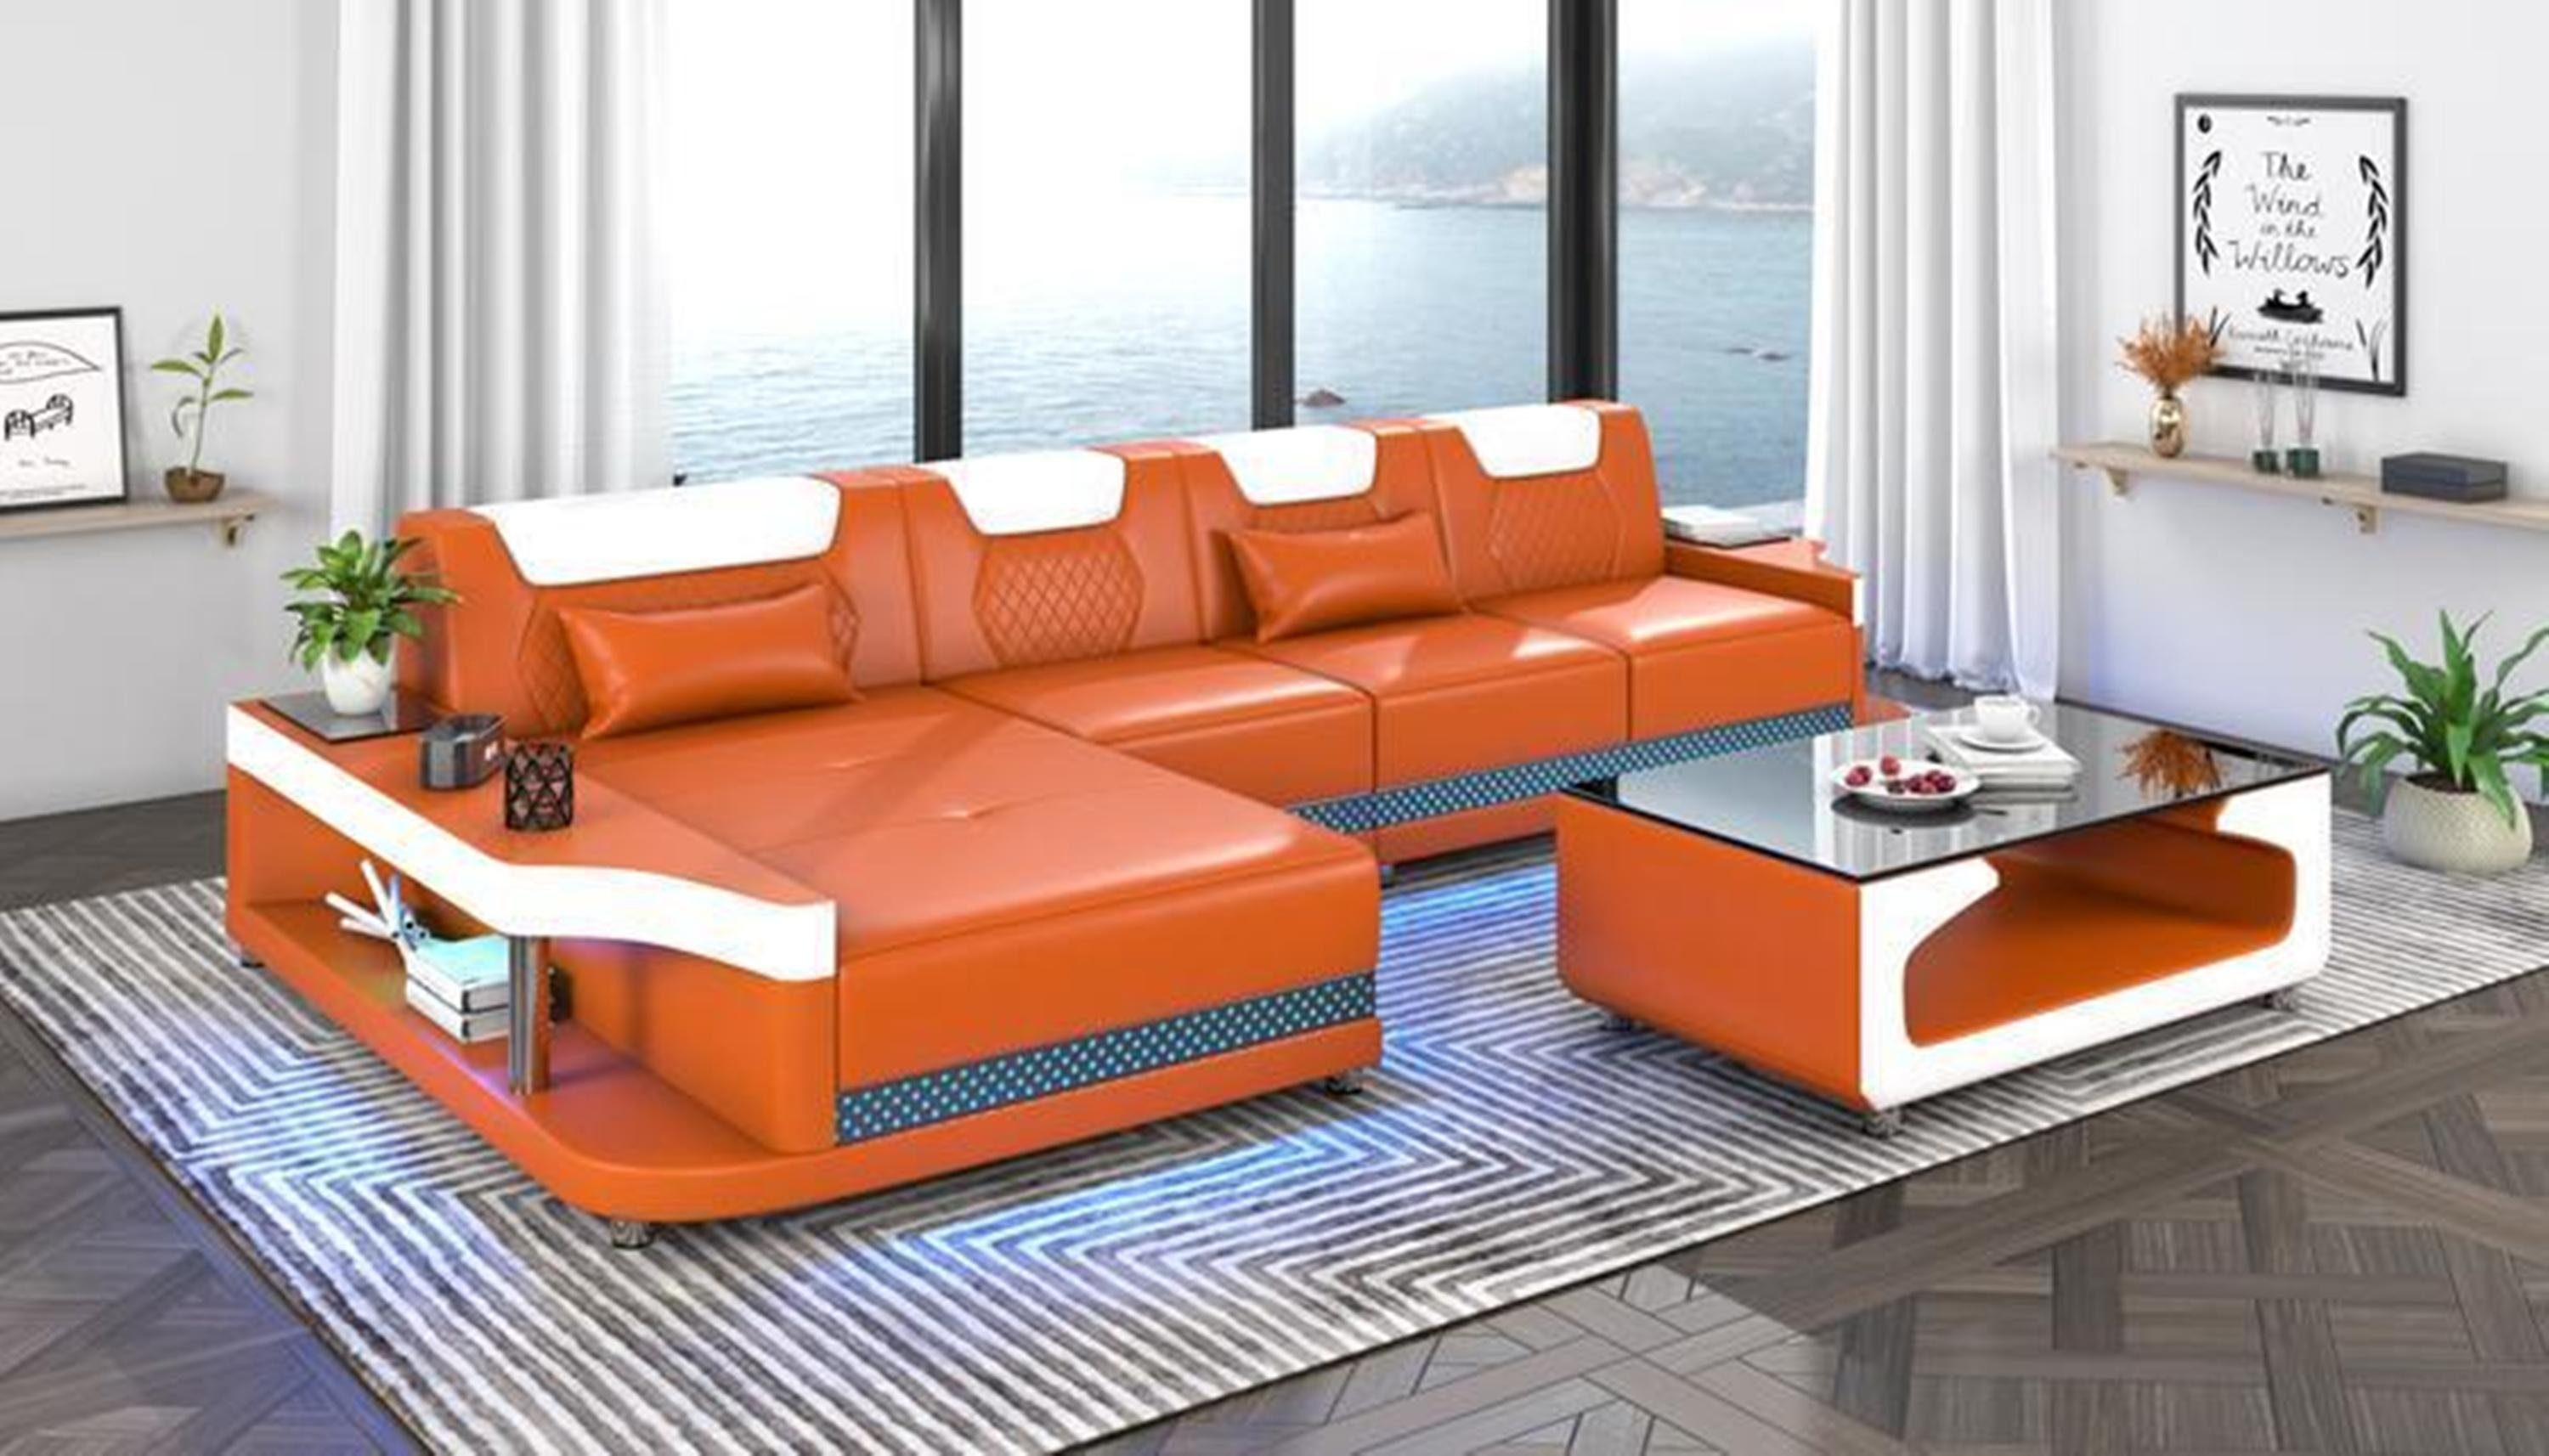 JVmoebel Ecksofa, Möbel Form Sofa Design L + Wohnzimmer Orange Couchtisch Eckcouch Ecksofa